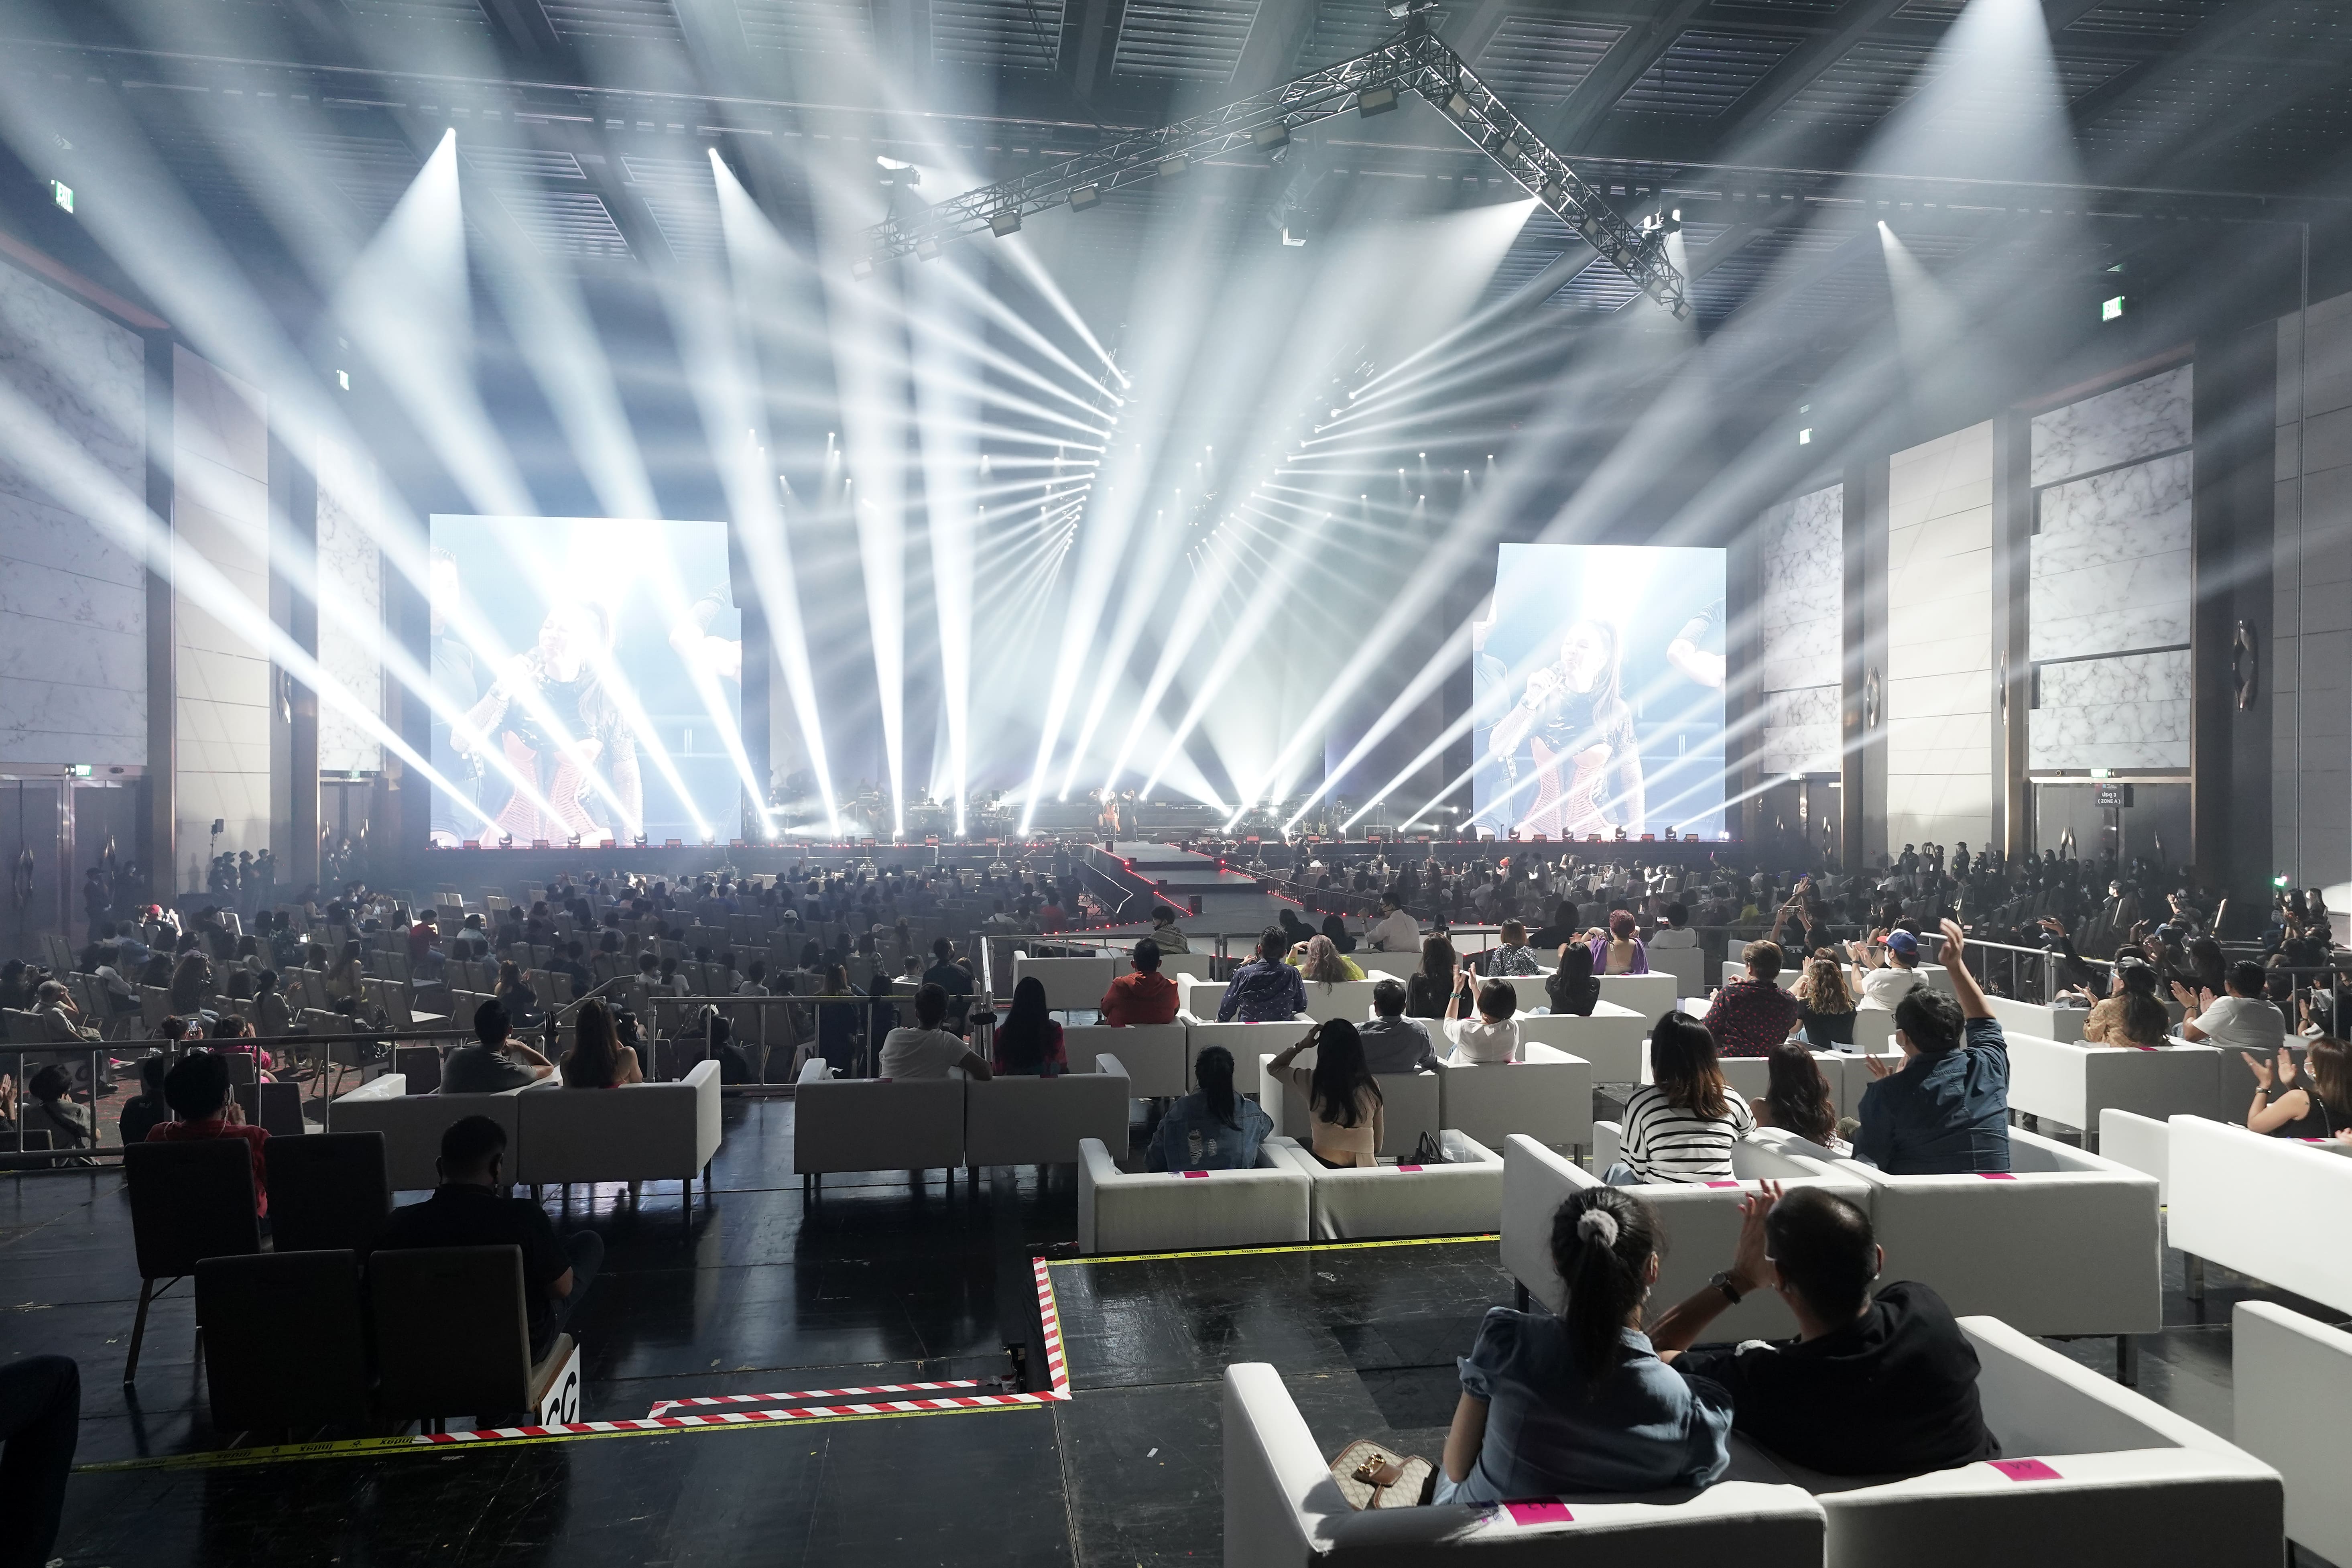 Hybrid Concert ครั้งแรกของประเทศไทย “เวทีคอนเสิร์ตคืนรอยยิ้ม”